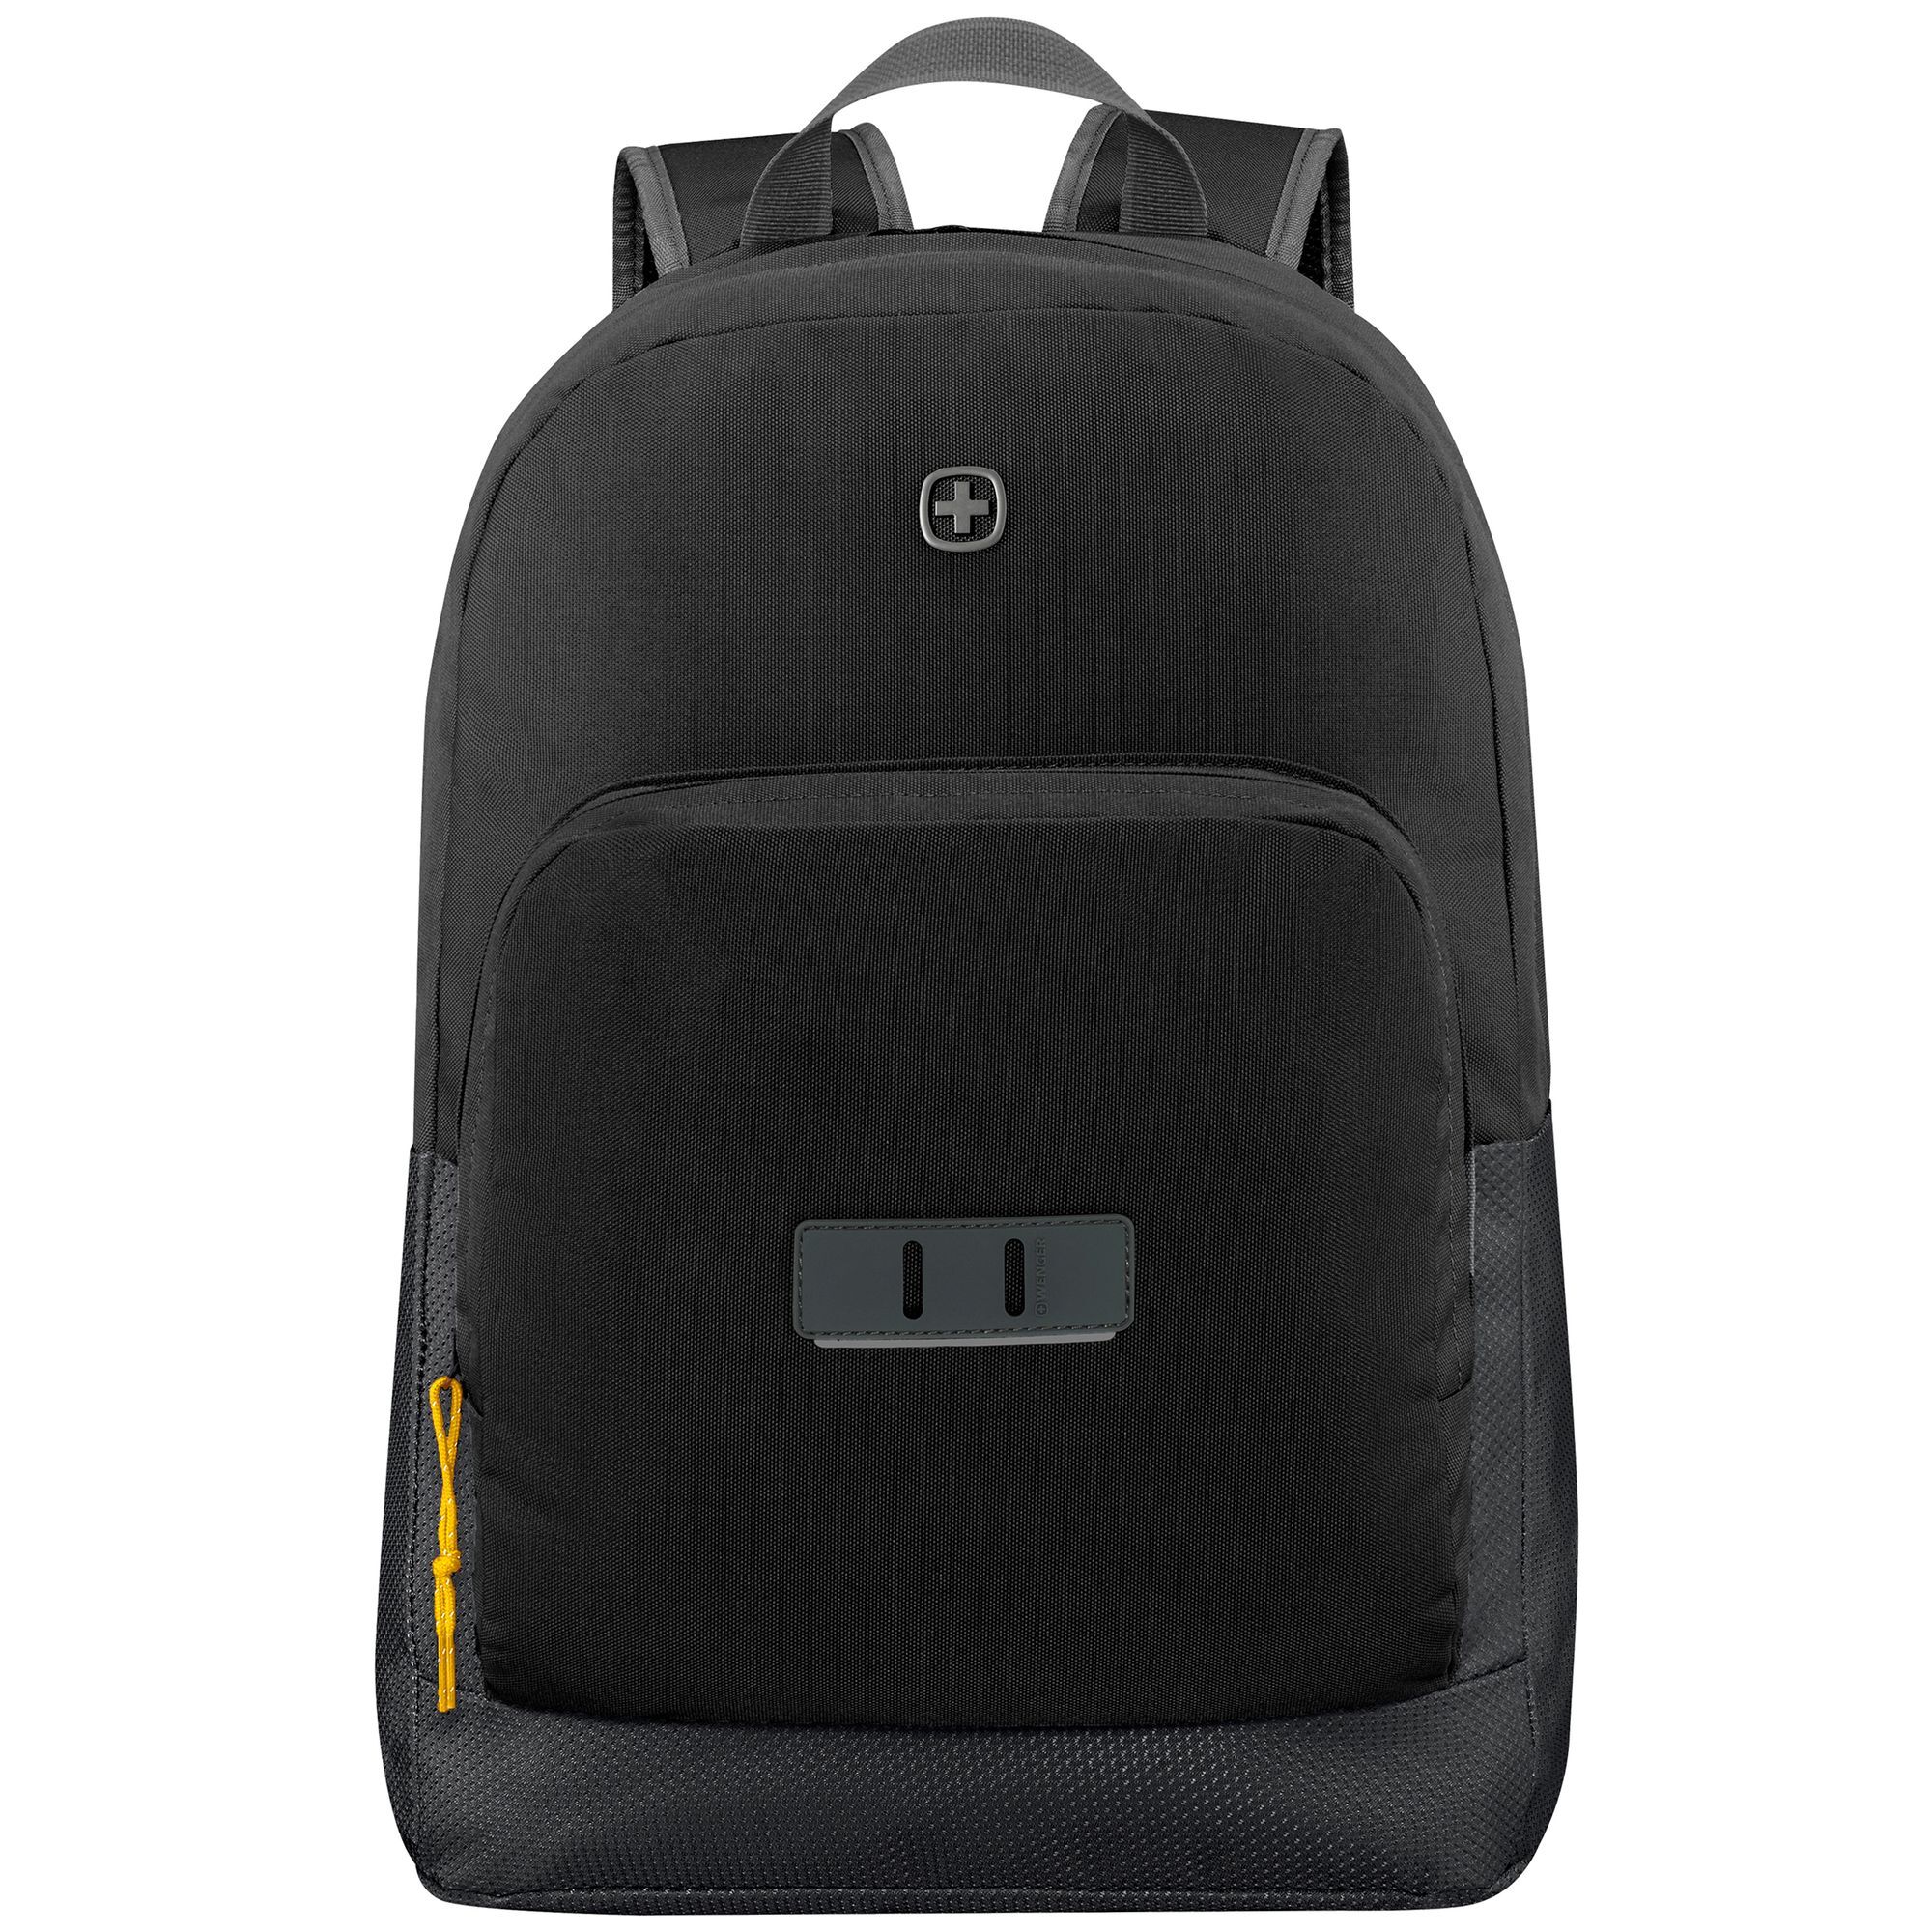 Рюкзак Wenger Crango 46 cm Laptopfach, цвет gravity black рюкзак wenger trayl 45 cm laptopfach цвет gravity black